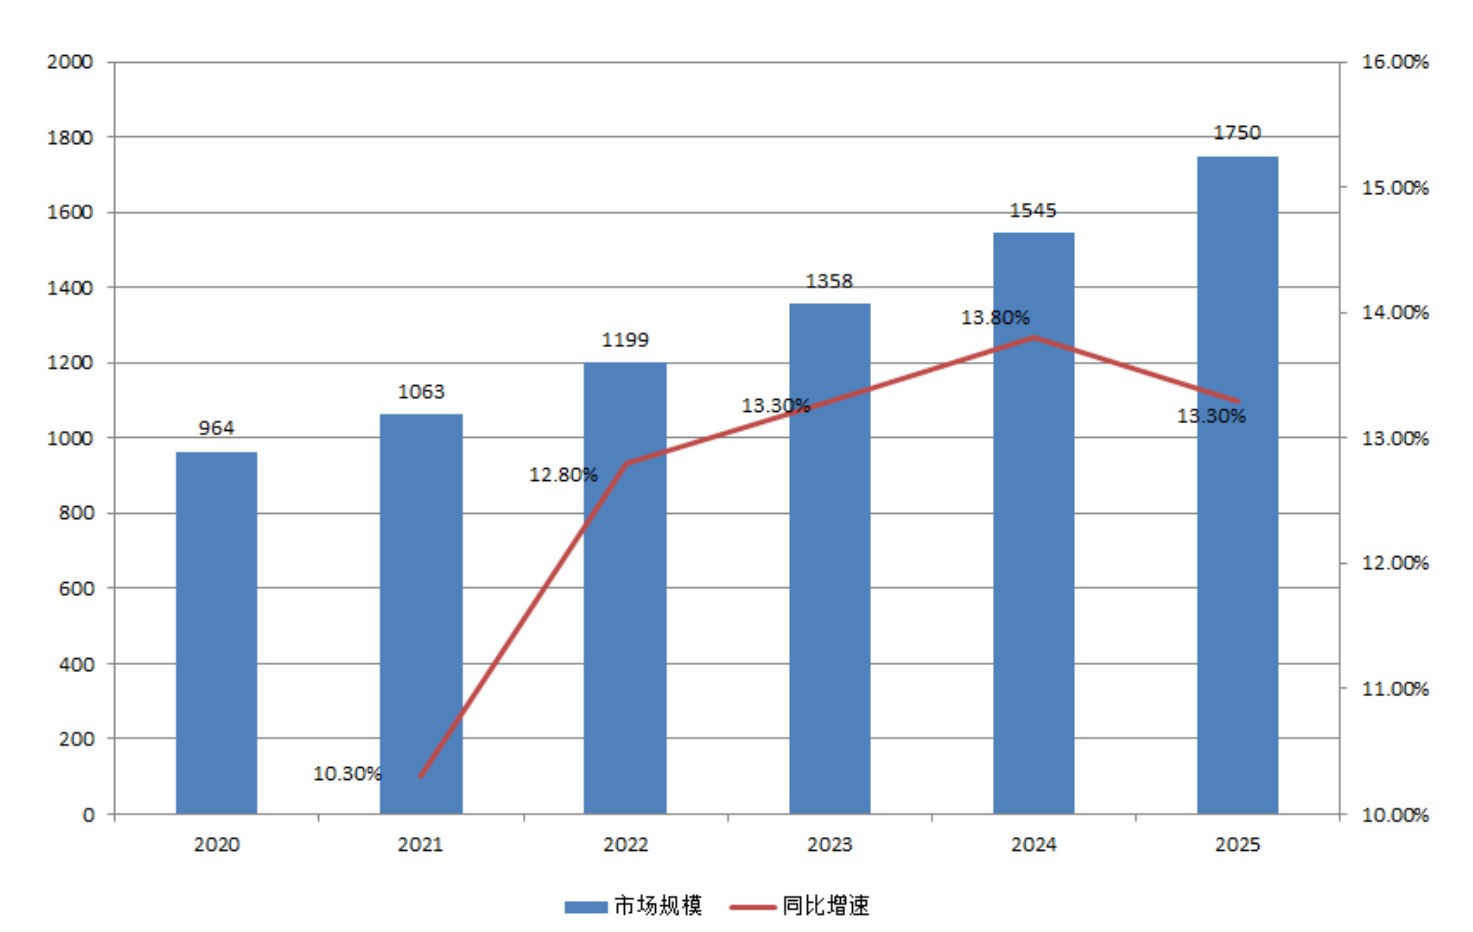 2020-2025年中国光通信市场规模及增速预测变化（单位亿元，%）